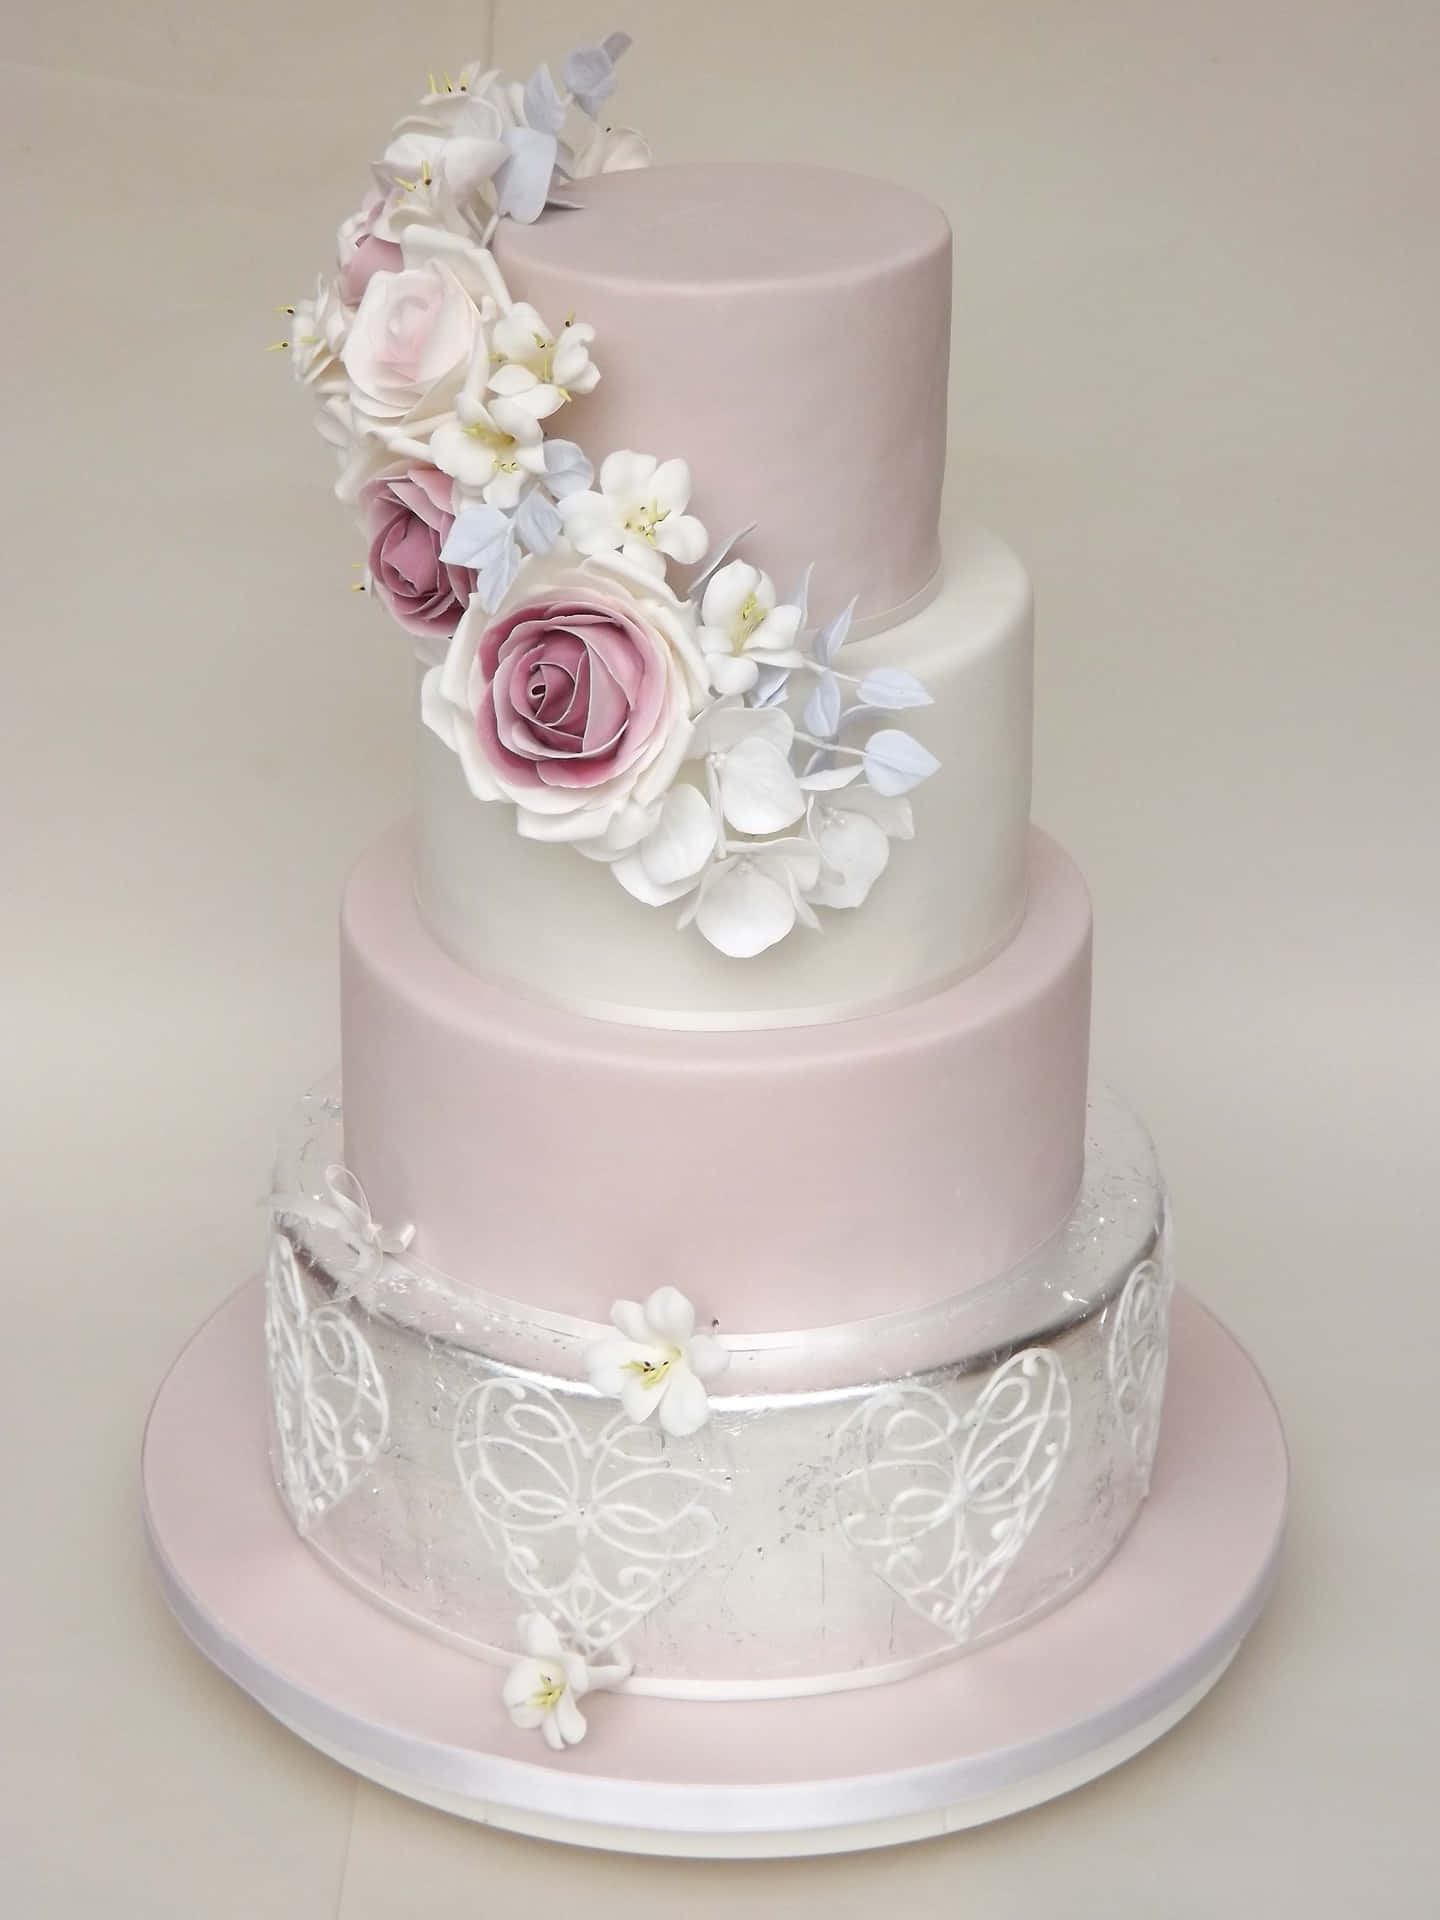 Einedreistöckige Torte Mit Rosa Blumen Und Silbernen Verzierungen